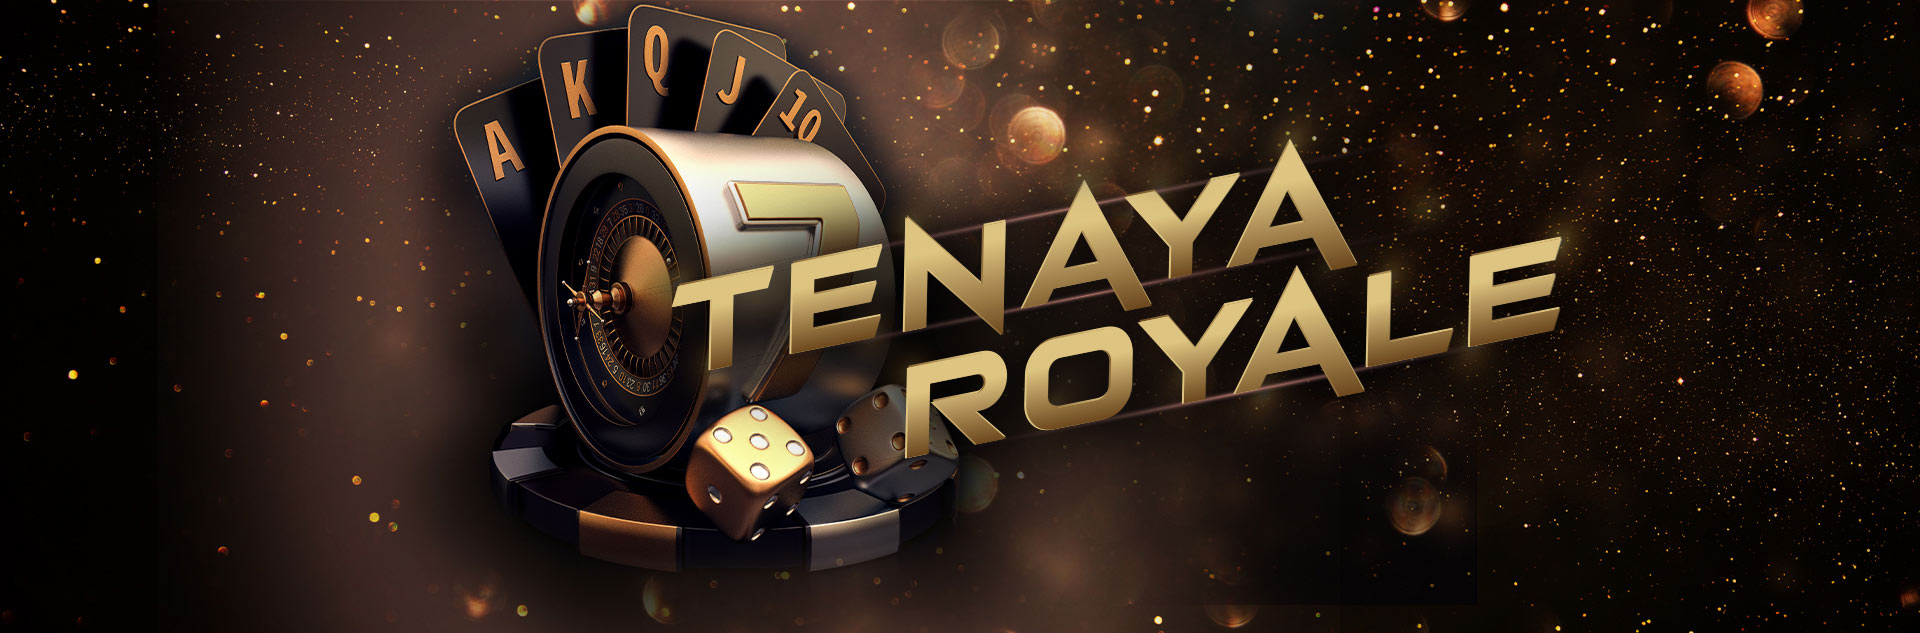 Tenaya Royale New Year's Eve party at Tenaya Lodge